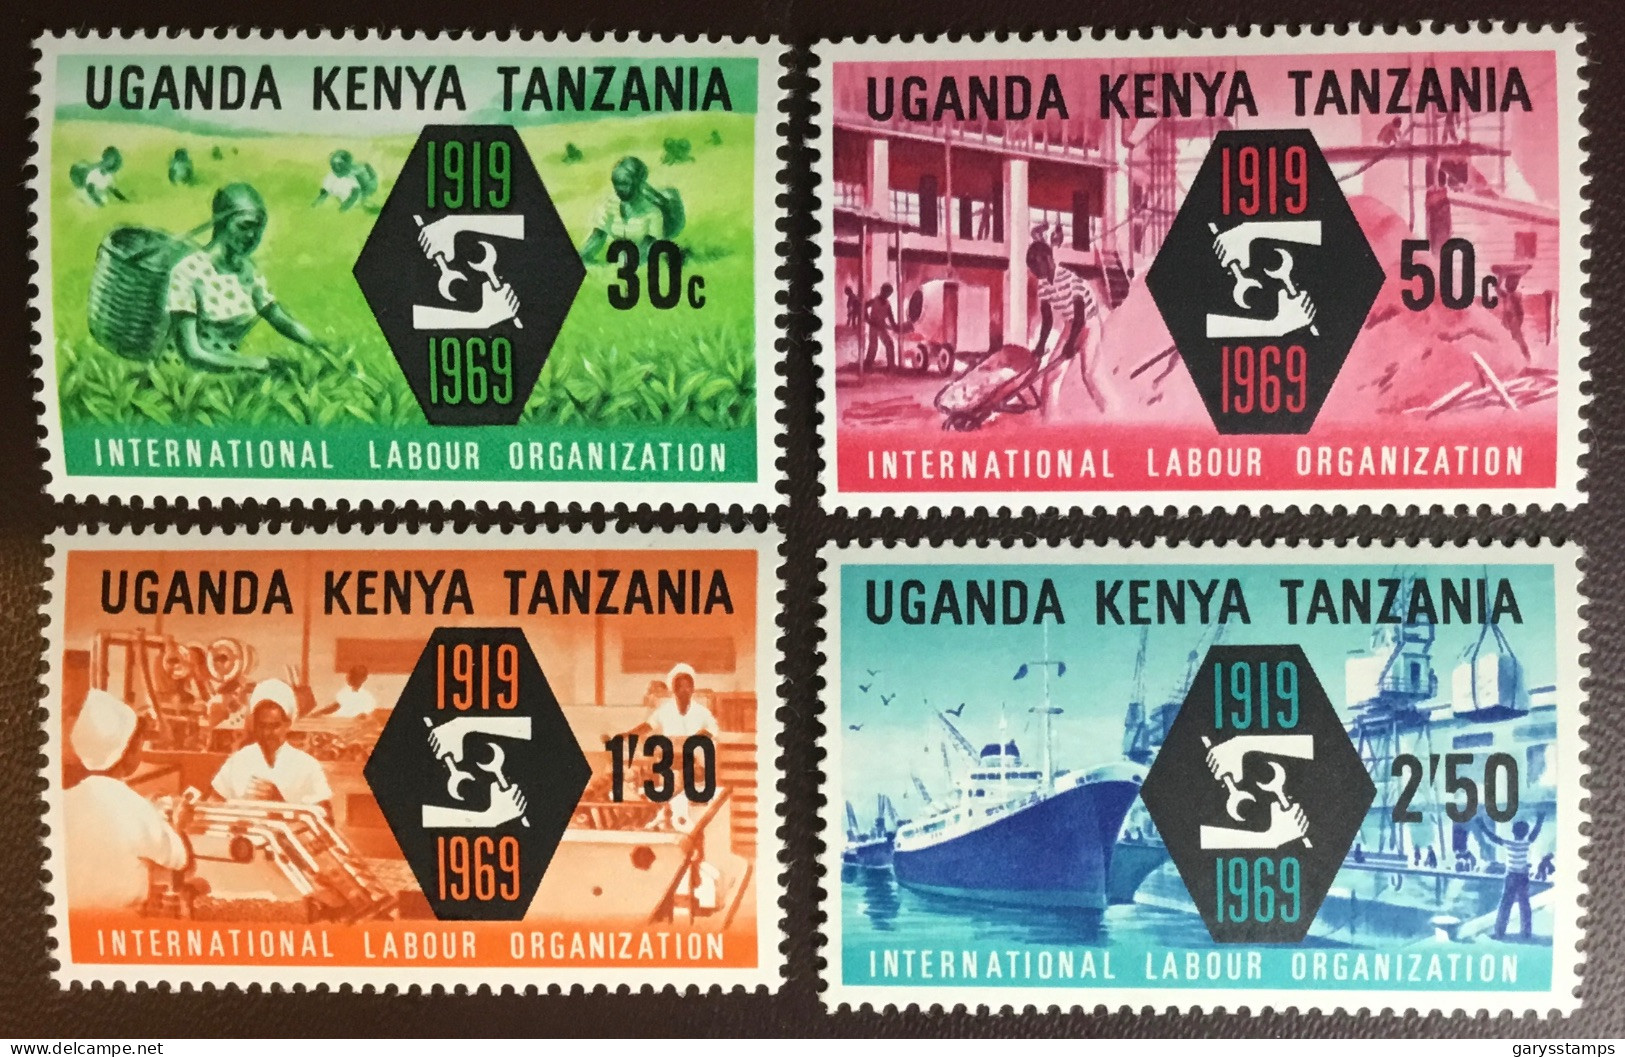 Kenya Uganda Tanzania 1969 ILO MNH - Kenya, Uganda & Tanzania